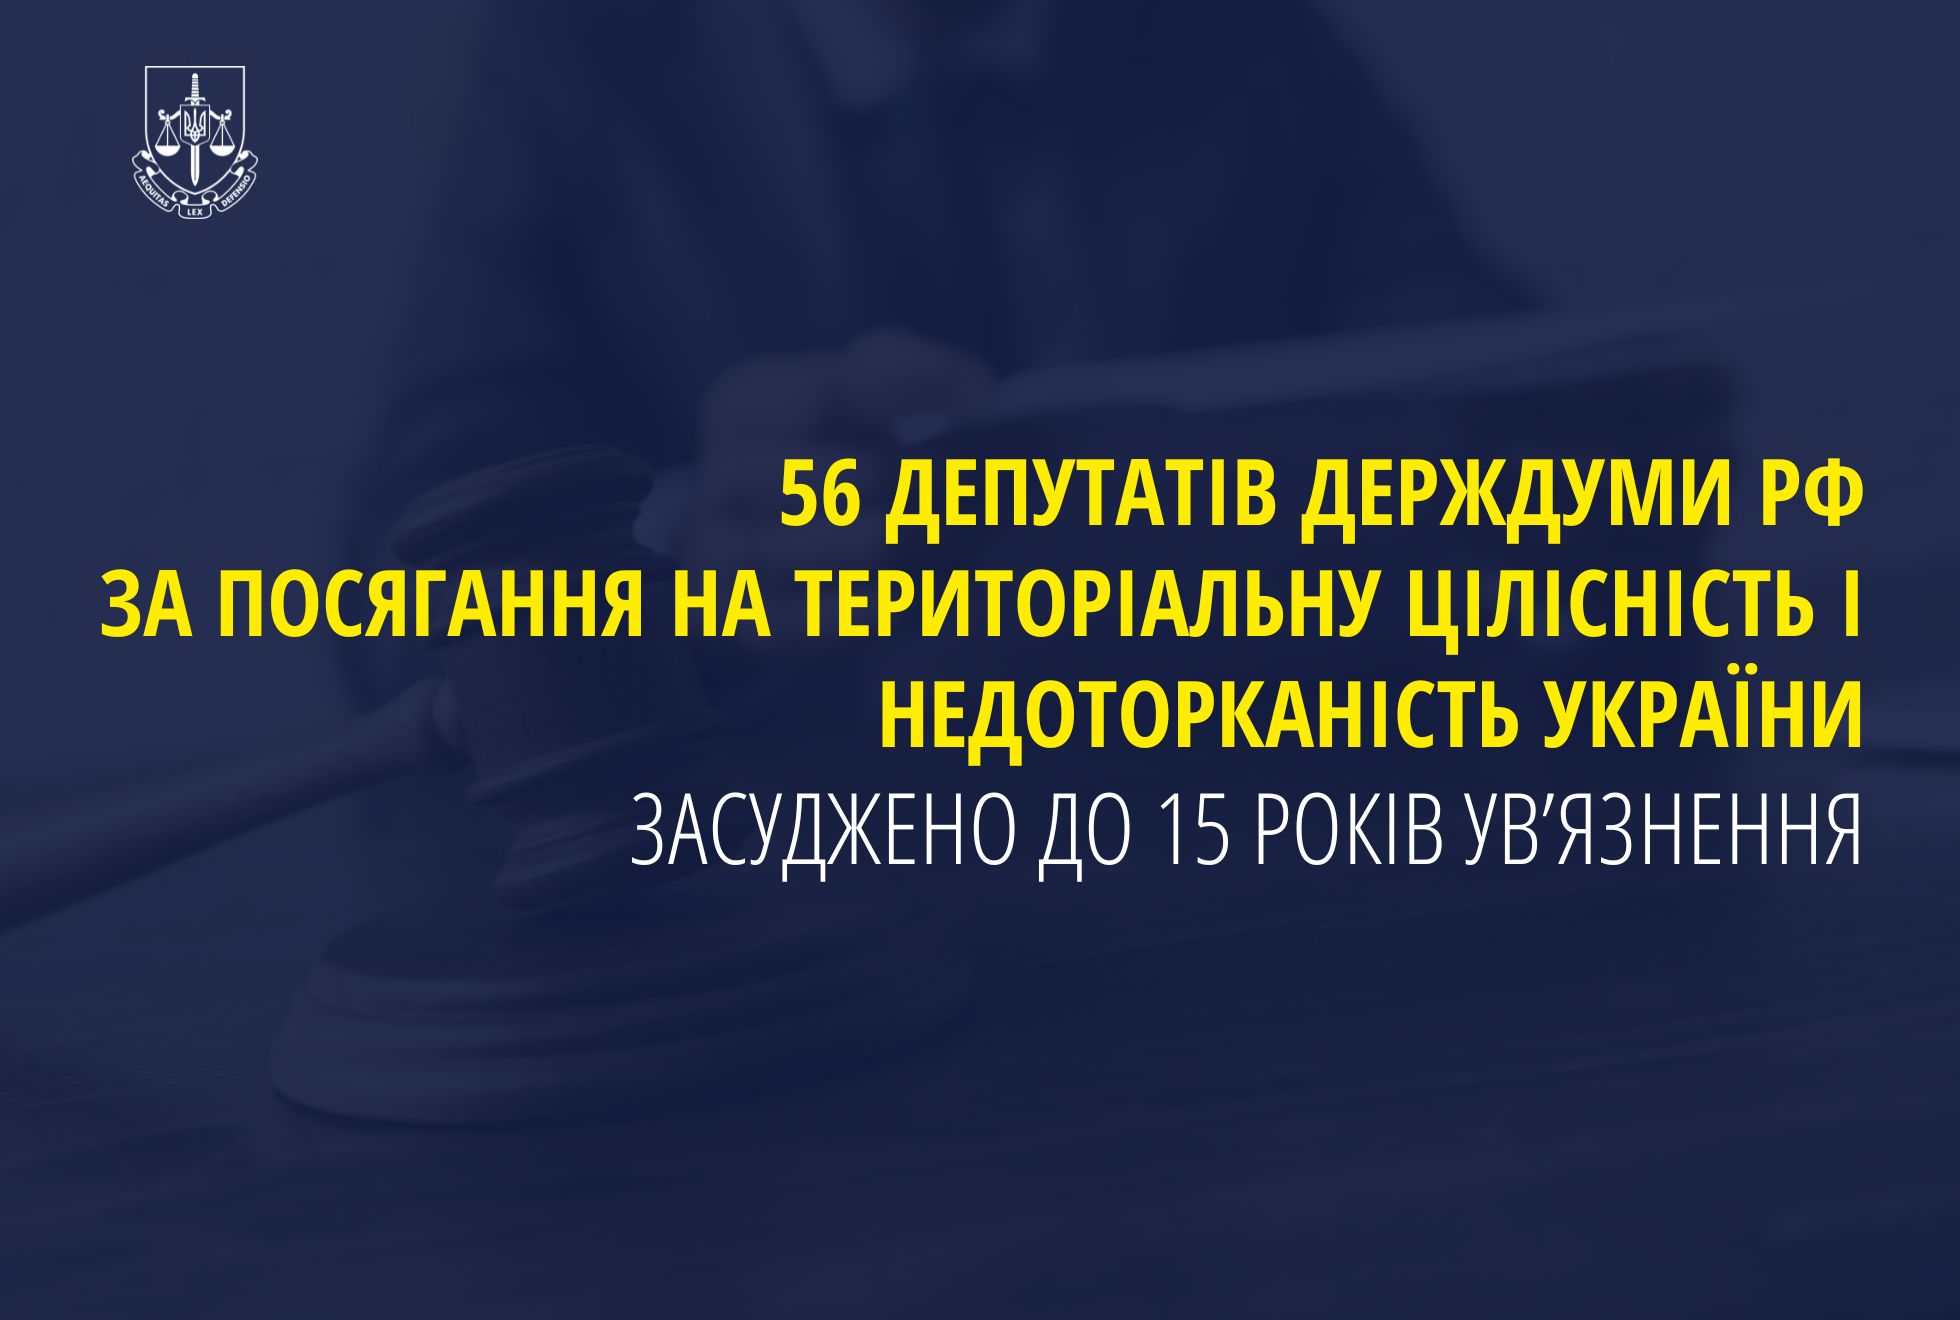 56 депутатів держдуми рф за посягання на територіальну цілісність і недоторканість України засуджено до 15 років ув’язнення